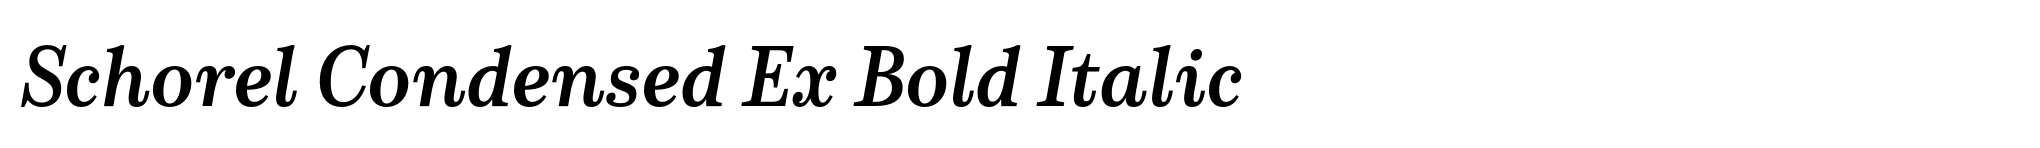 Schorel Condensed Ex Bold Italic image